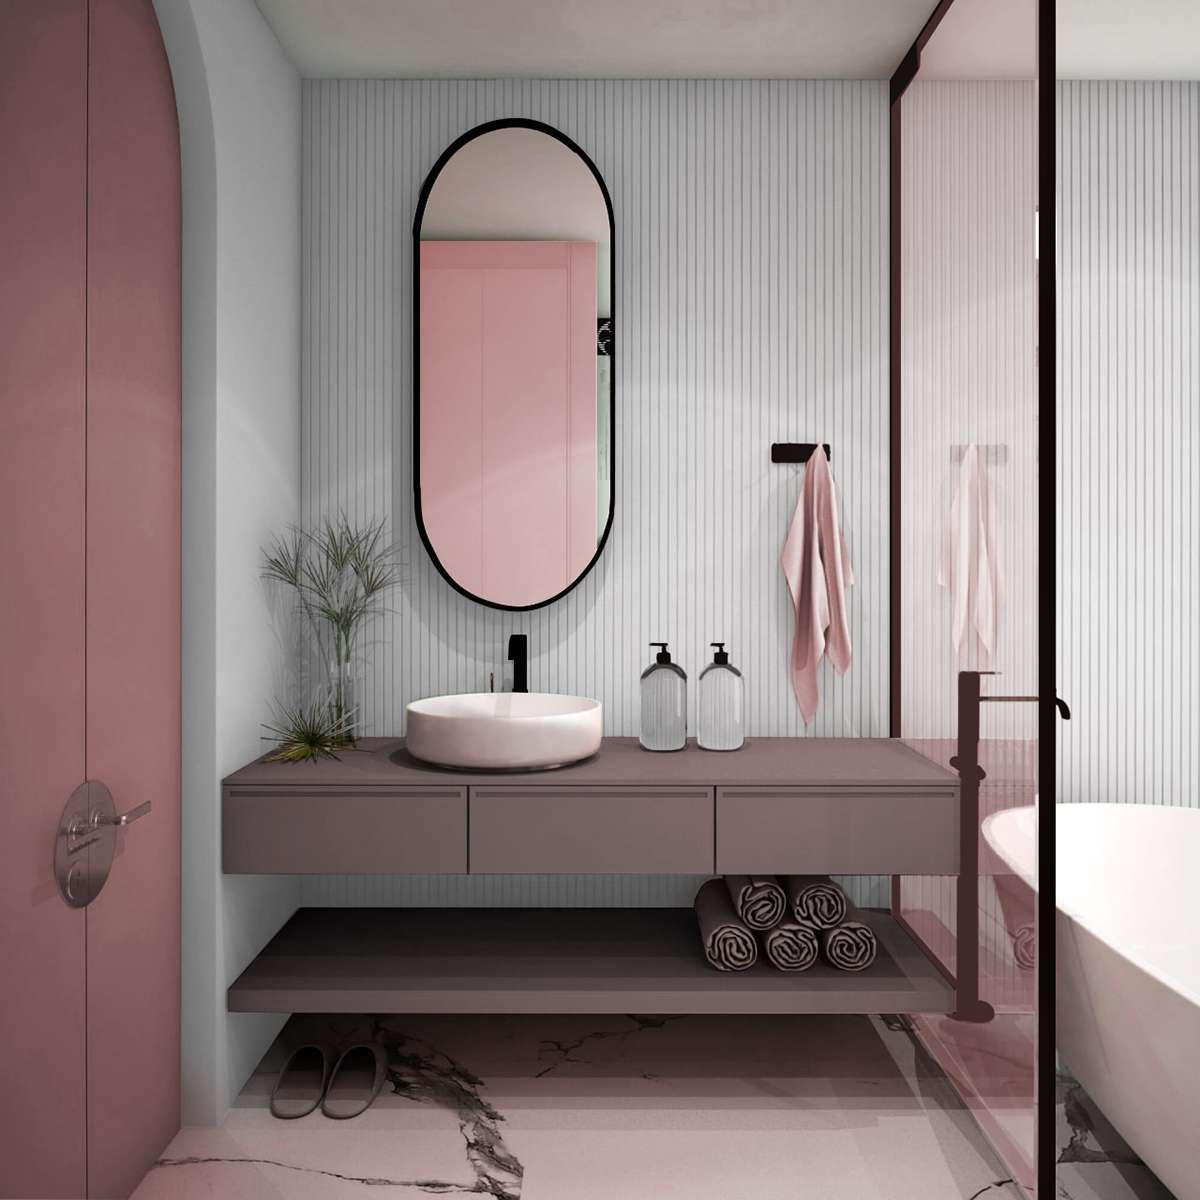 Mẫu thiết kế nhà vệ sinh theo phong cách Color Block màu hồng nhẹ nhàng